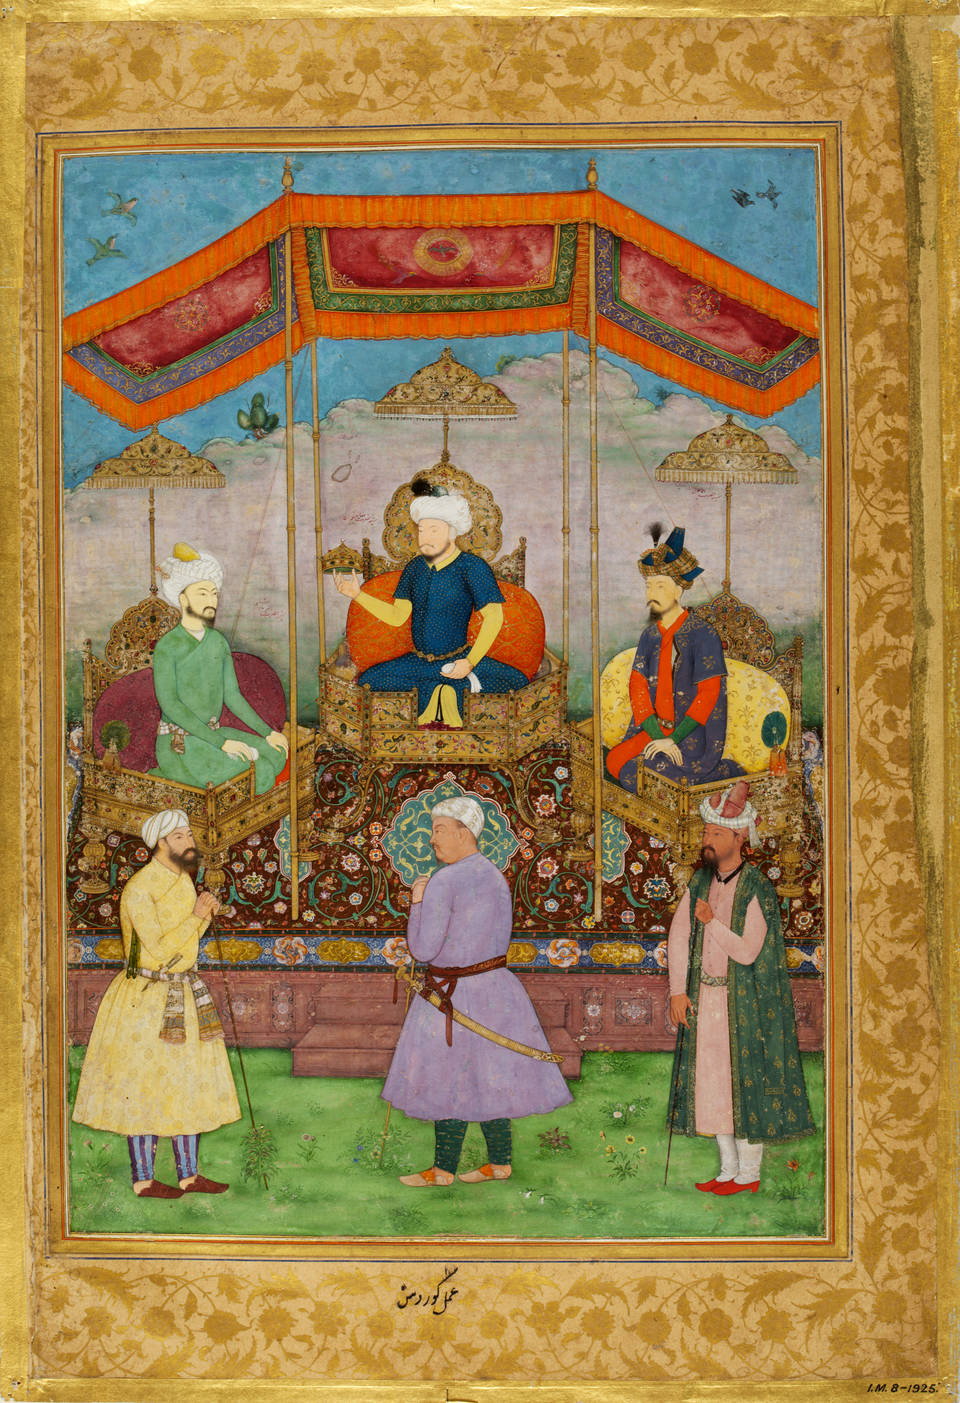 Kings Of India. Muslim Kings of India. Extravagant kings